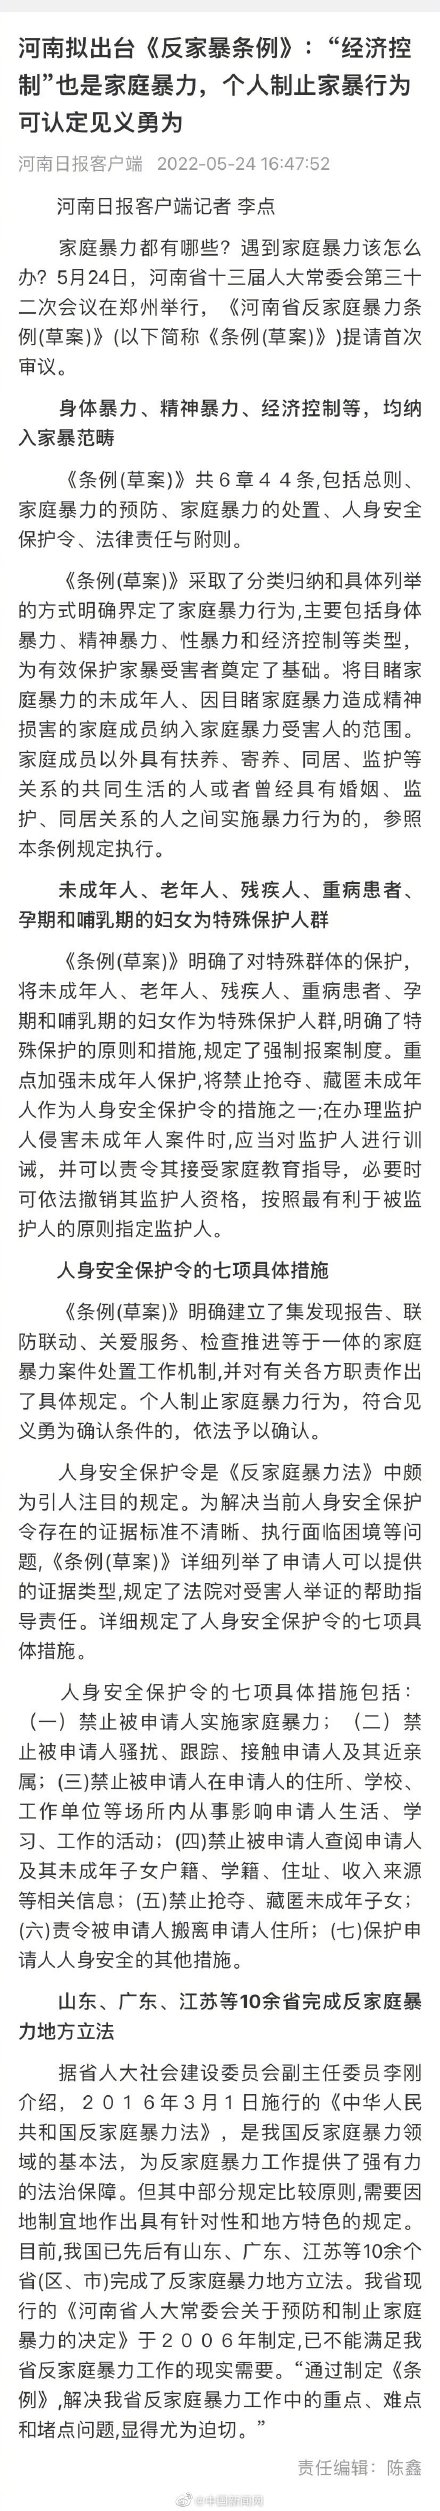 河南省拟出台反家庭暴力条例